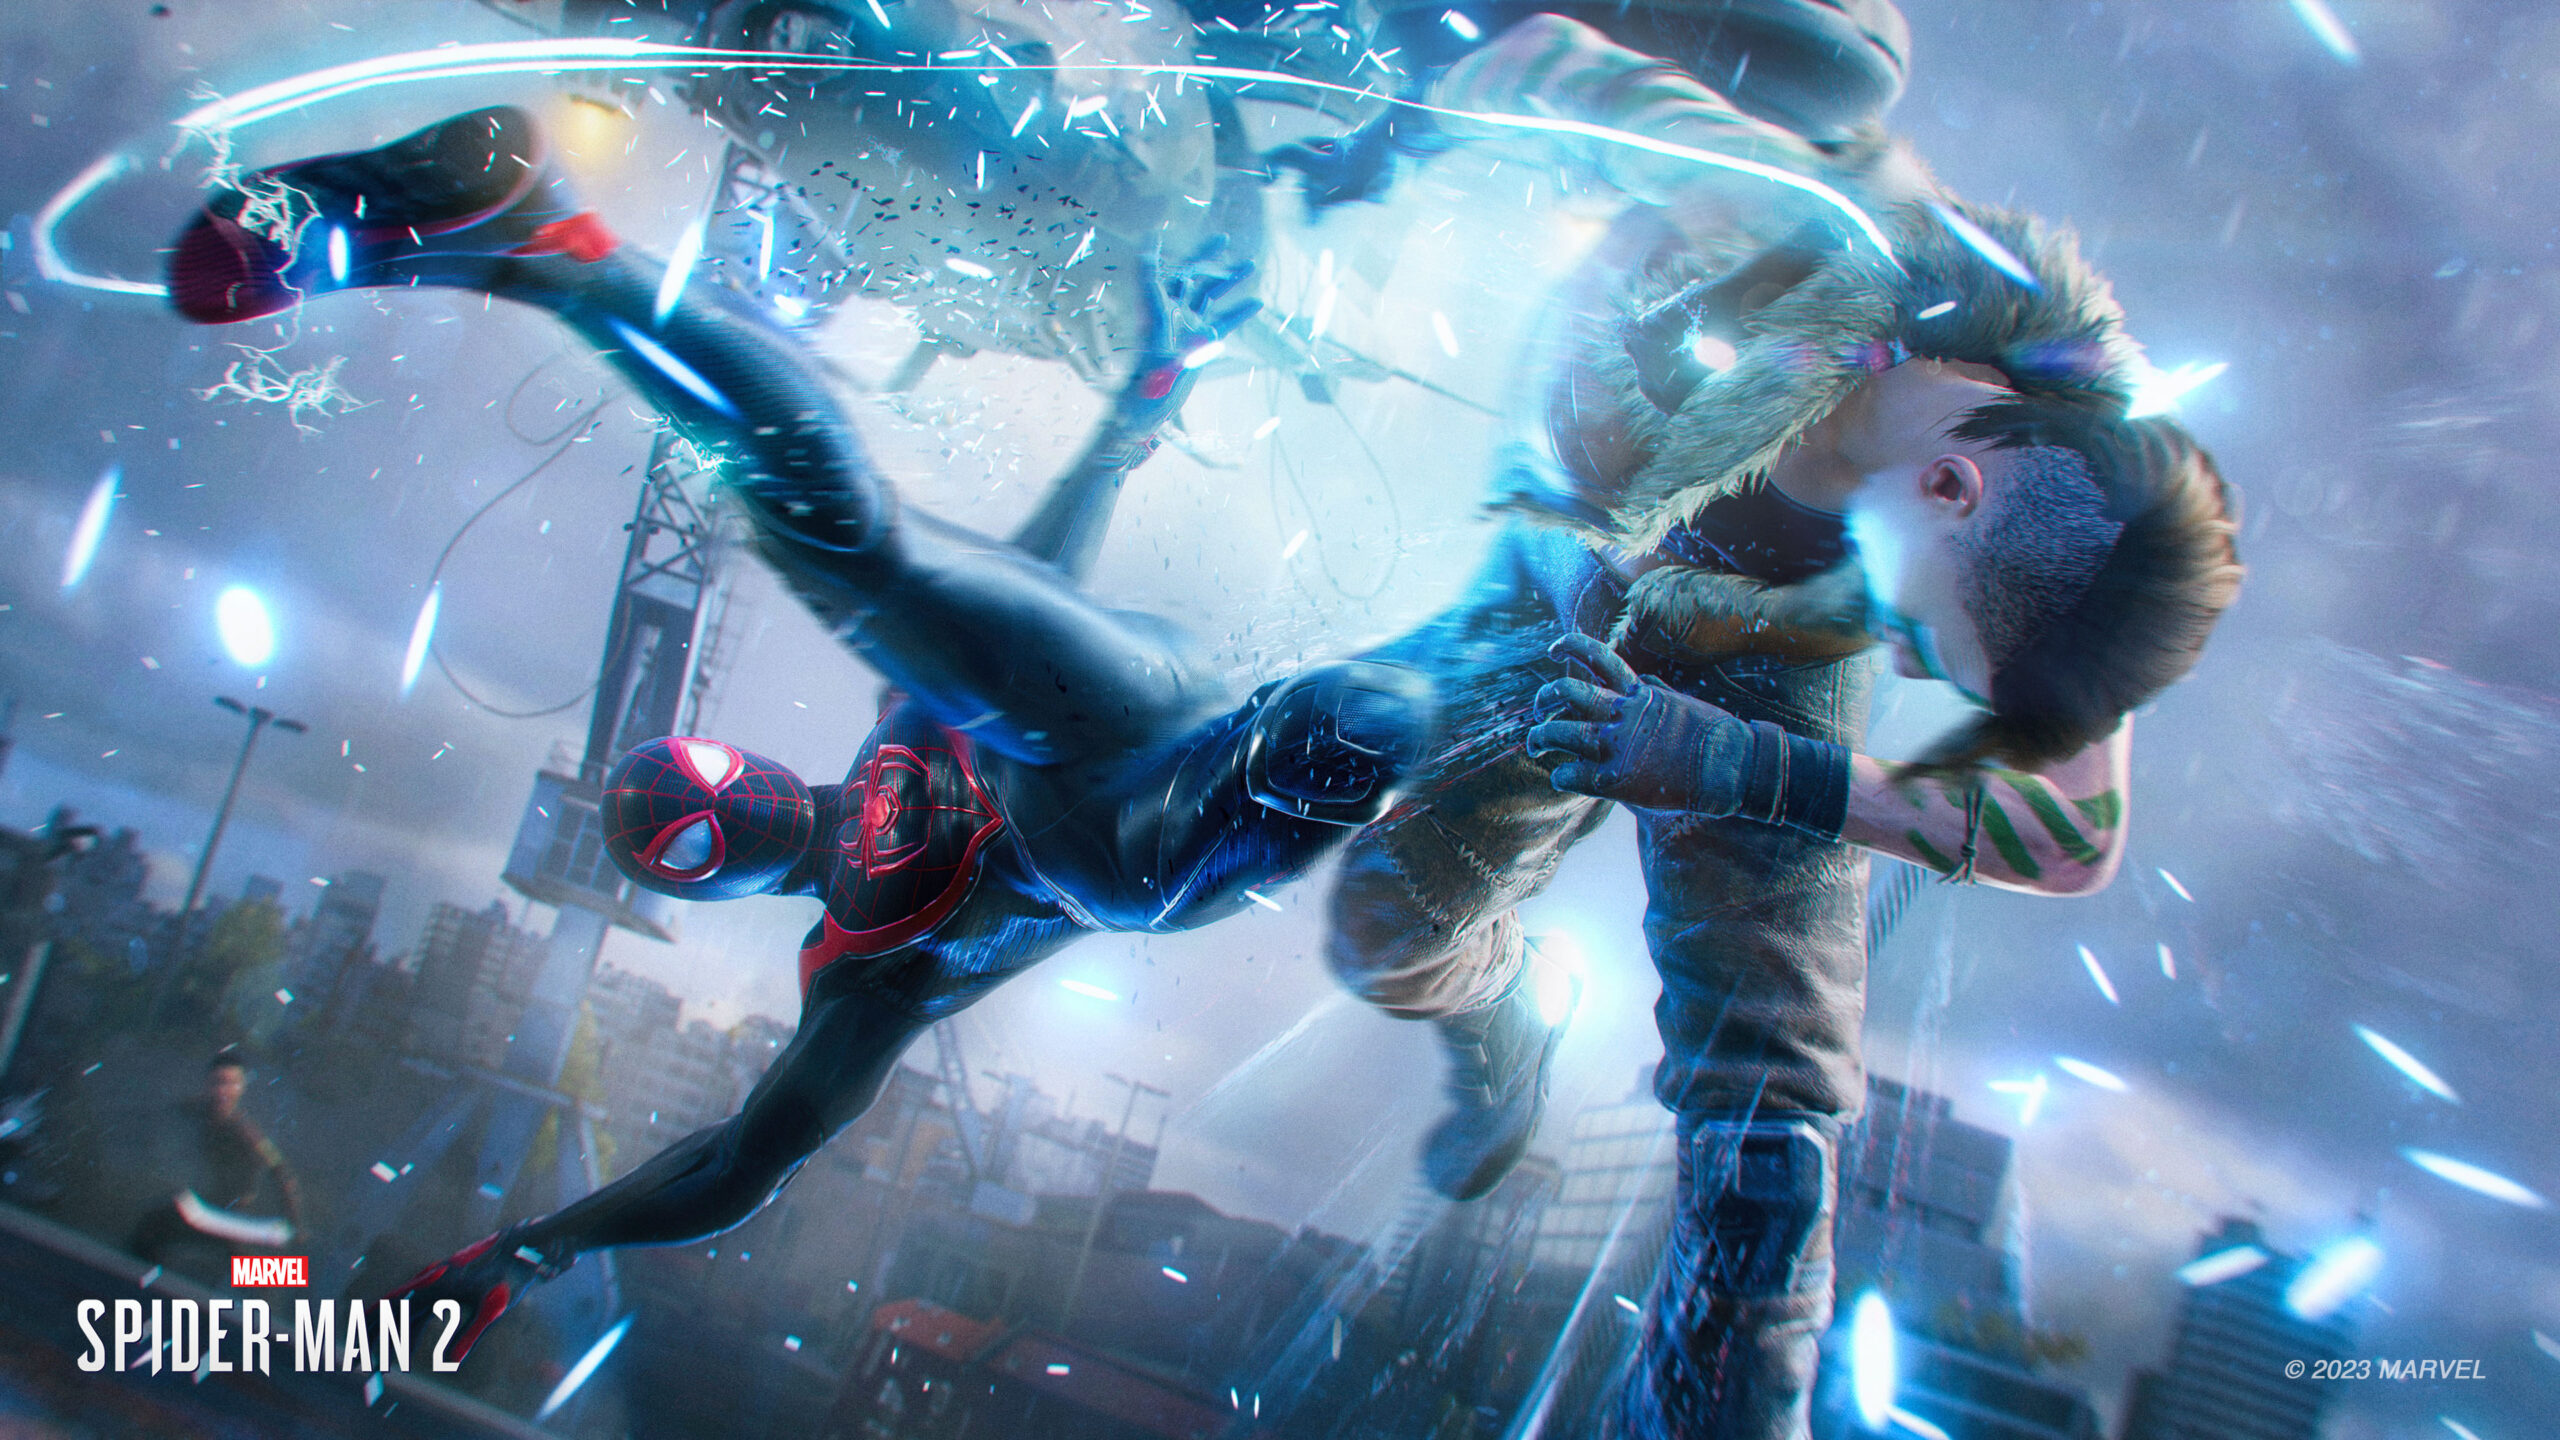 Novo trailer do game The Amazing Spider-Man traz combate